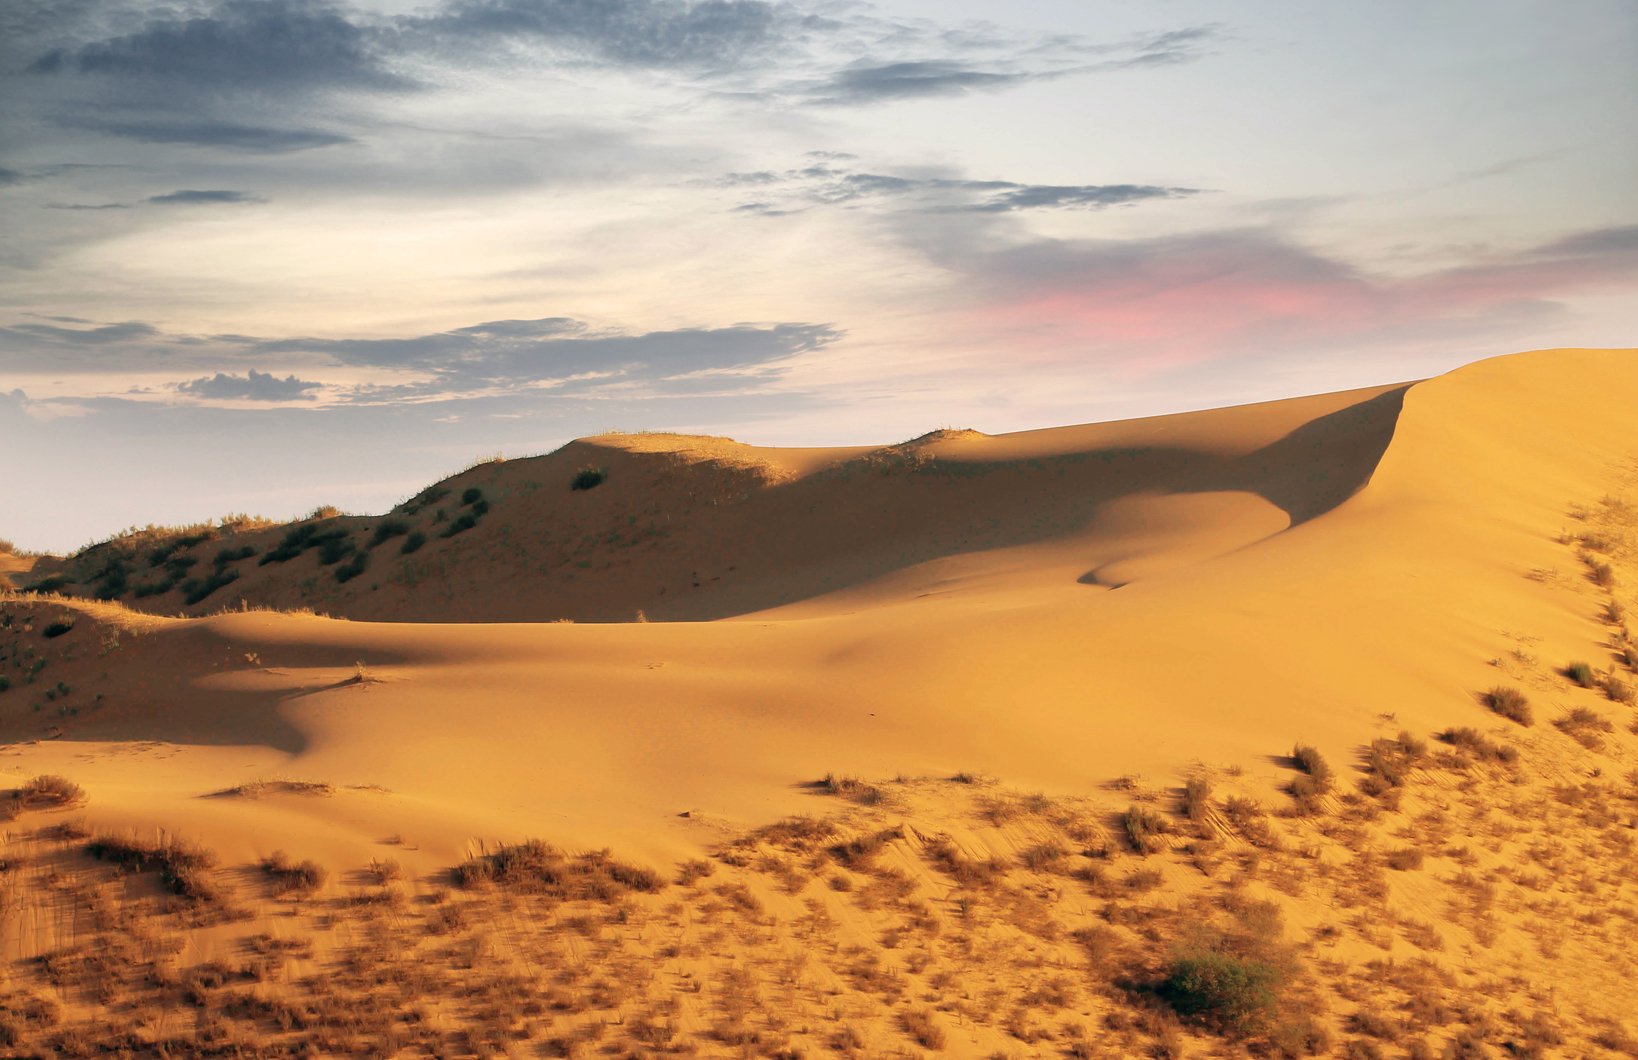 песок,песчаная гора,сарыкум,жёлтые пески,дагестан,заповедник., Marat Magov